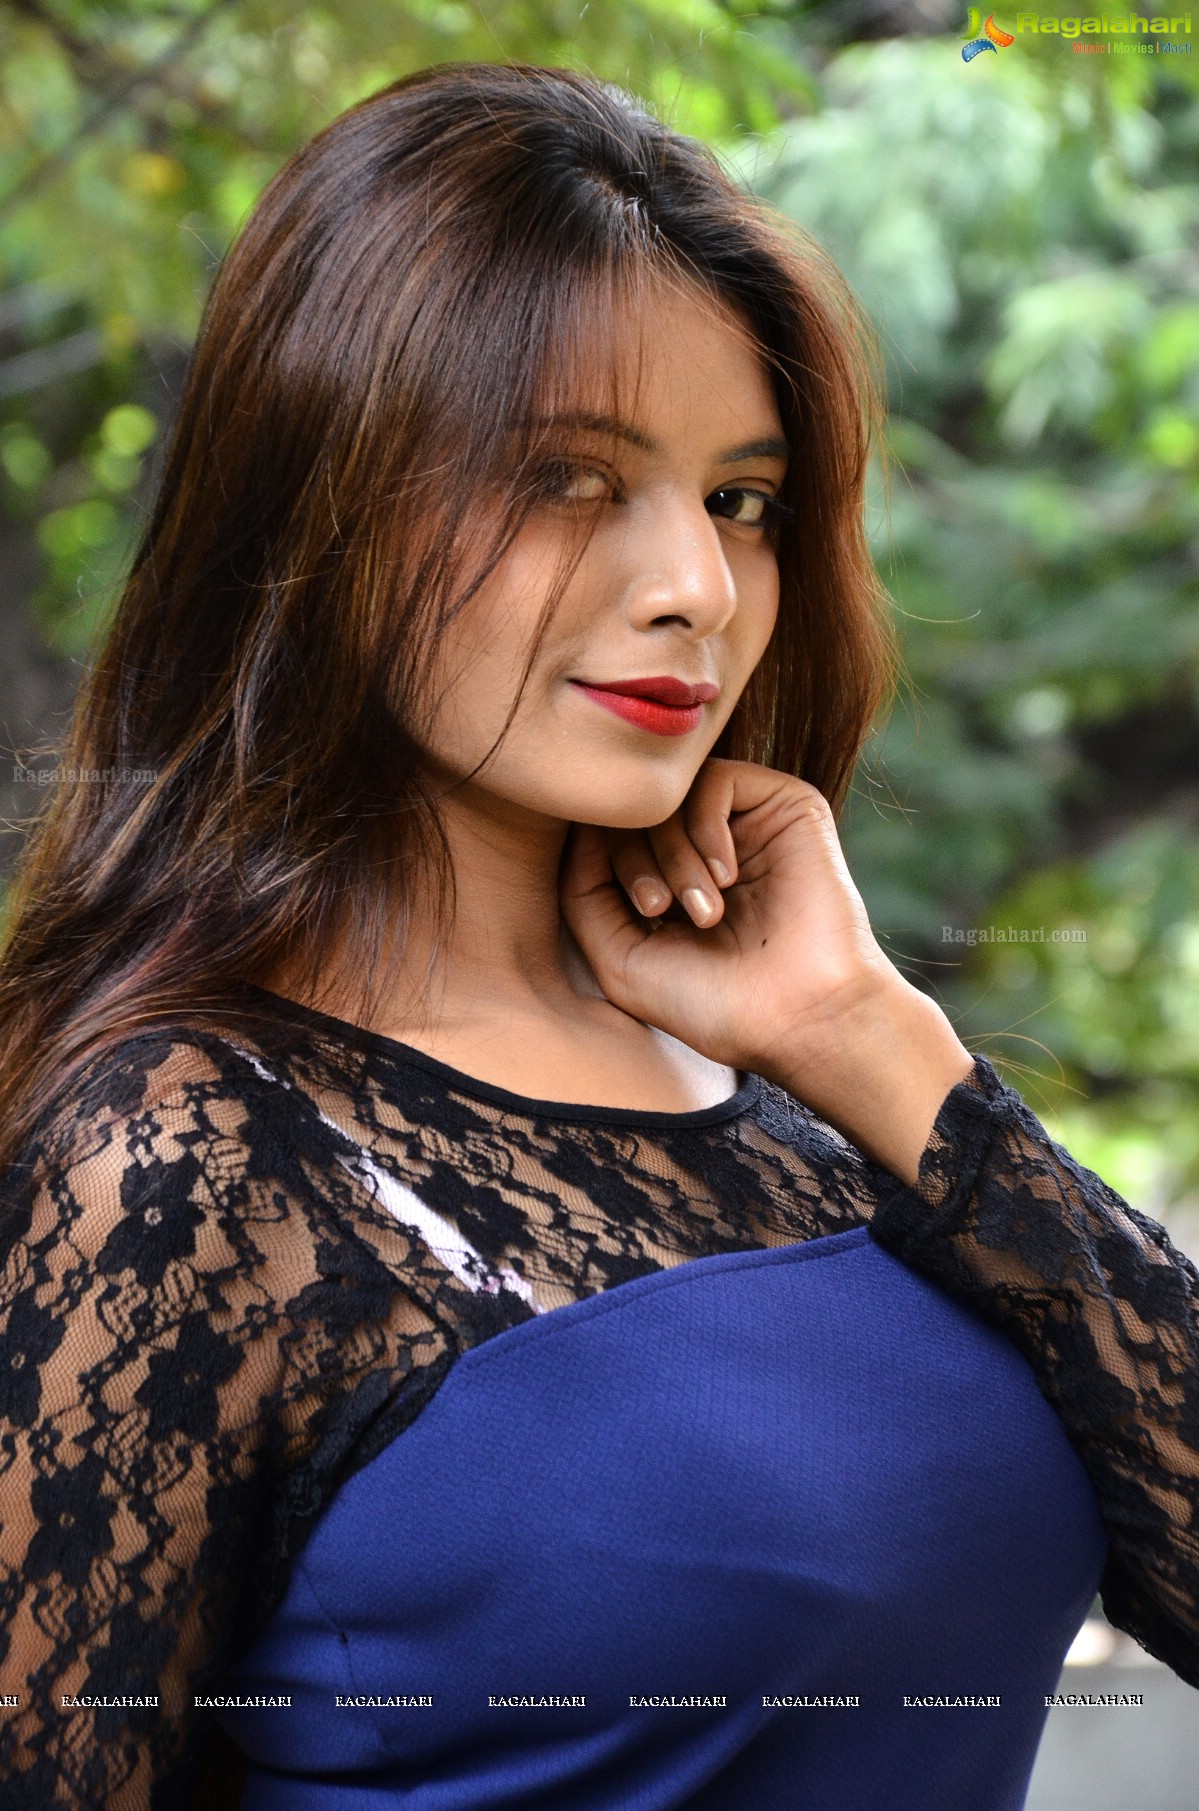 Neha Gupta